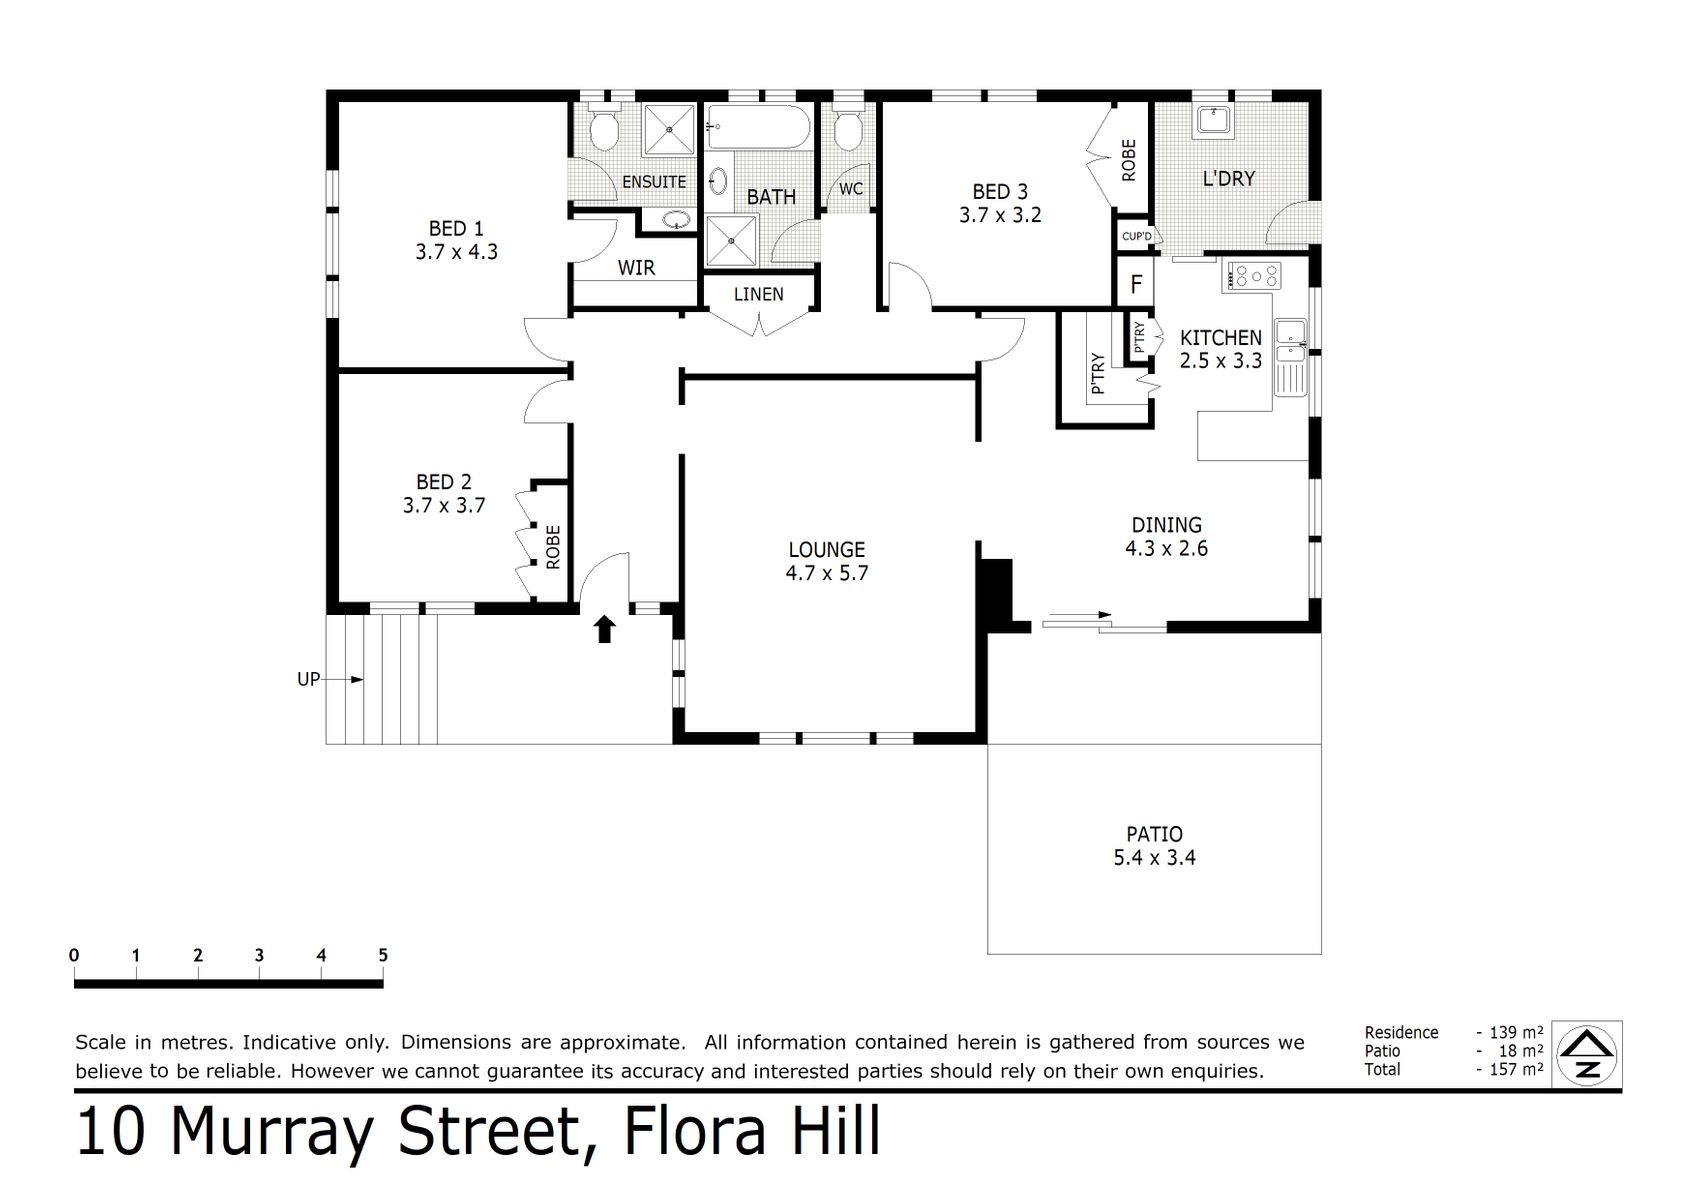 10 Murray Street Flora Hill (18 FEB 2020) 139sqm